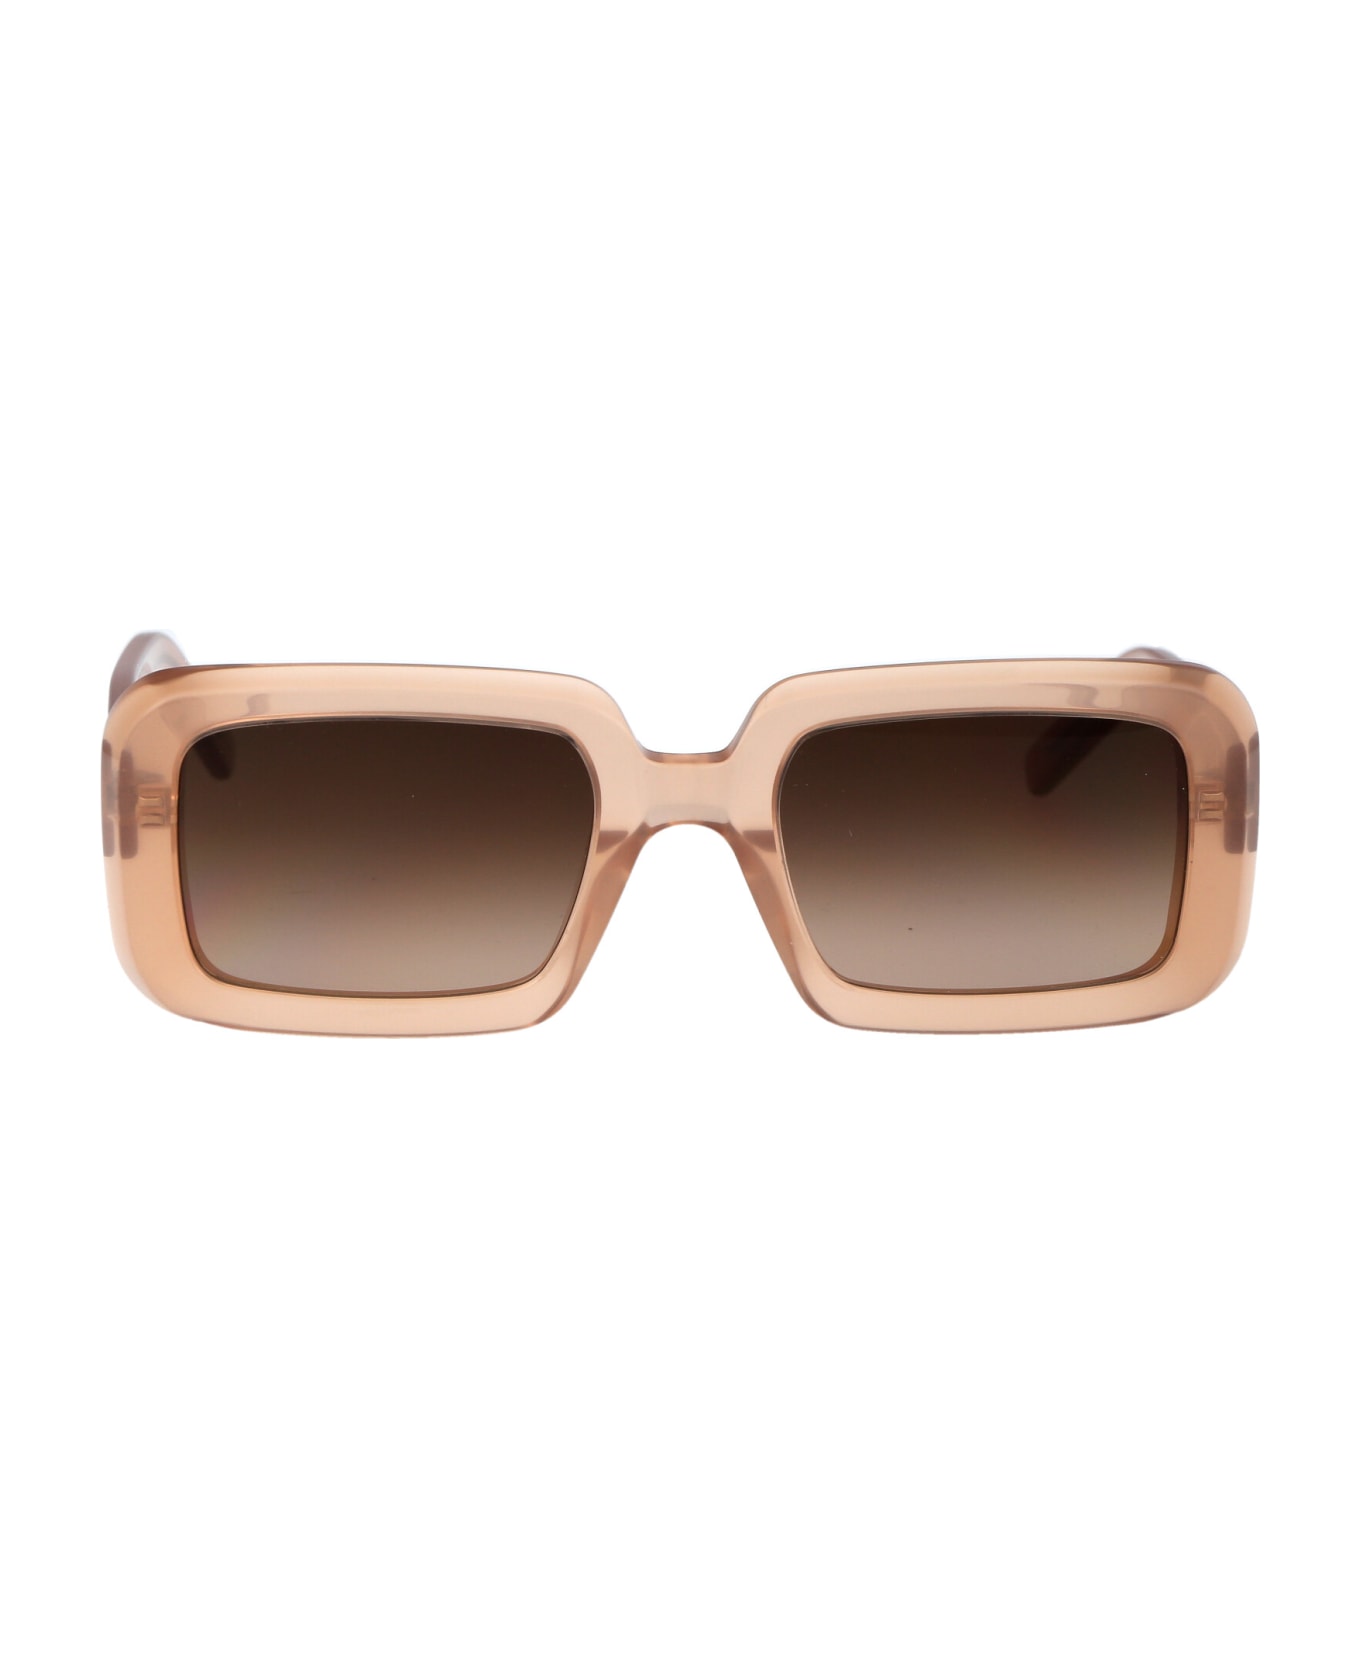 Saint Laurent Eyewear Sl 534 Sunrise Sunglasses - 014 ORANGE ORANGE BROWN